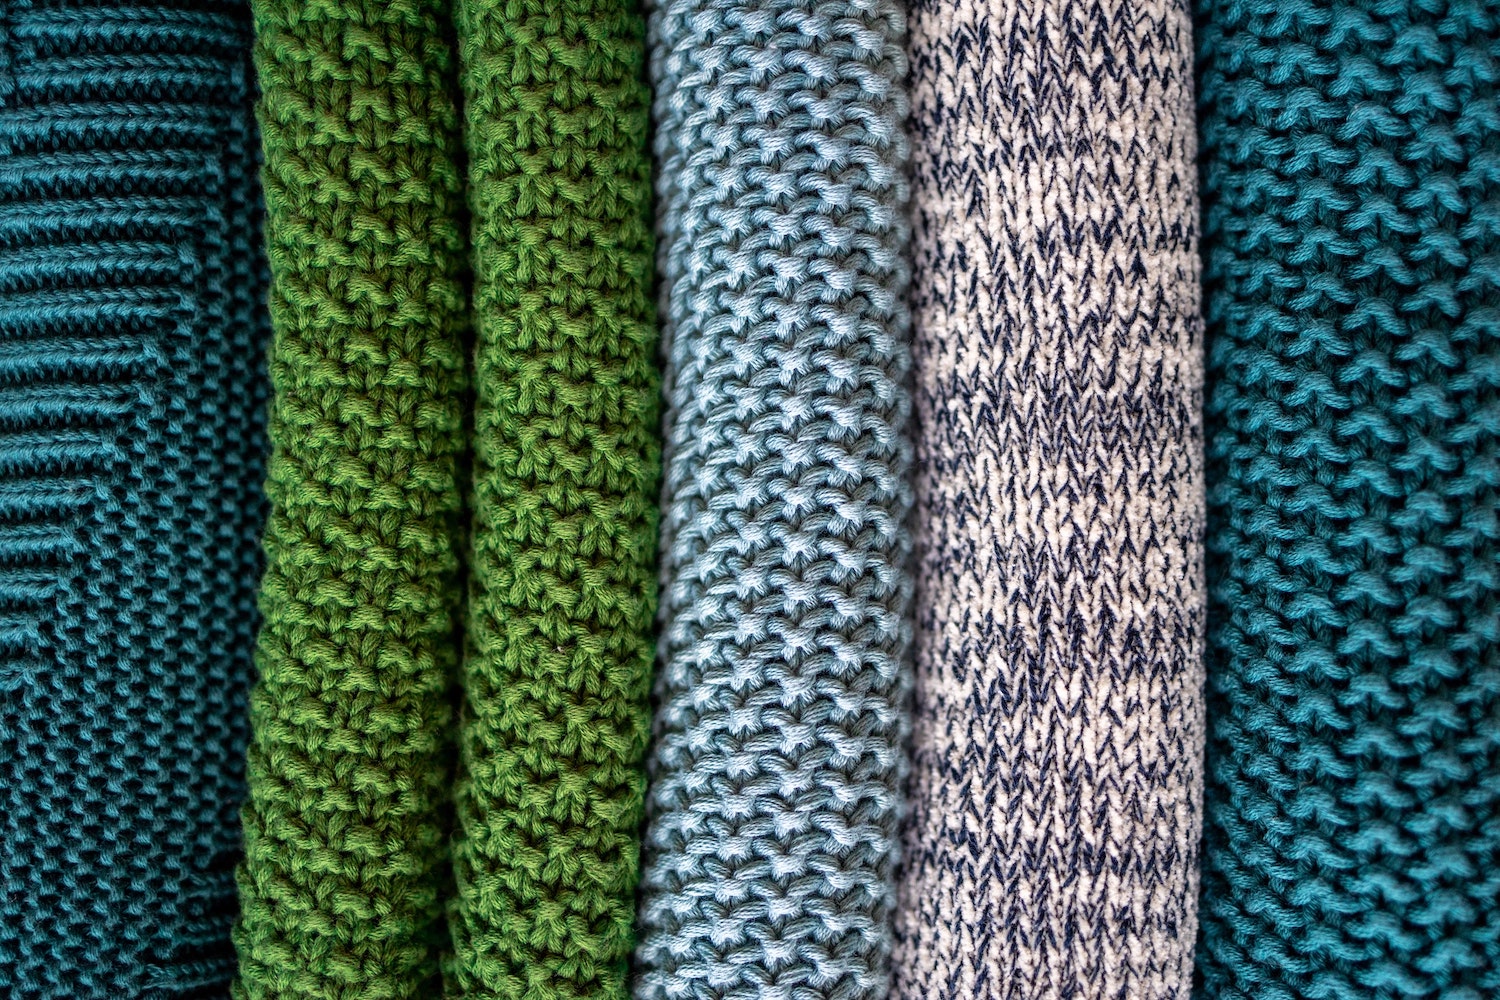 Comment tricoter un bonnet en laine ? Suivez le guide.